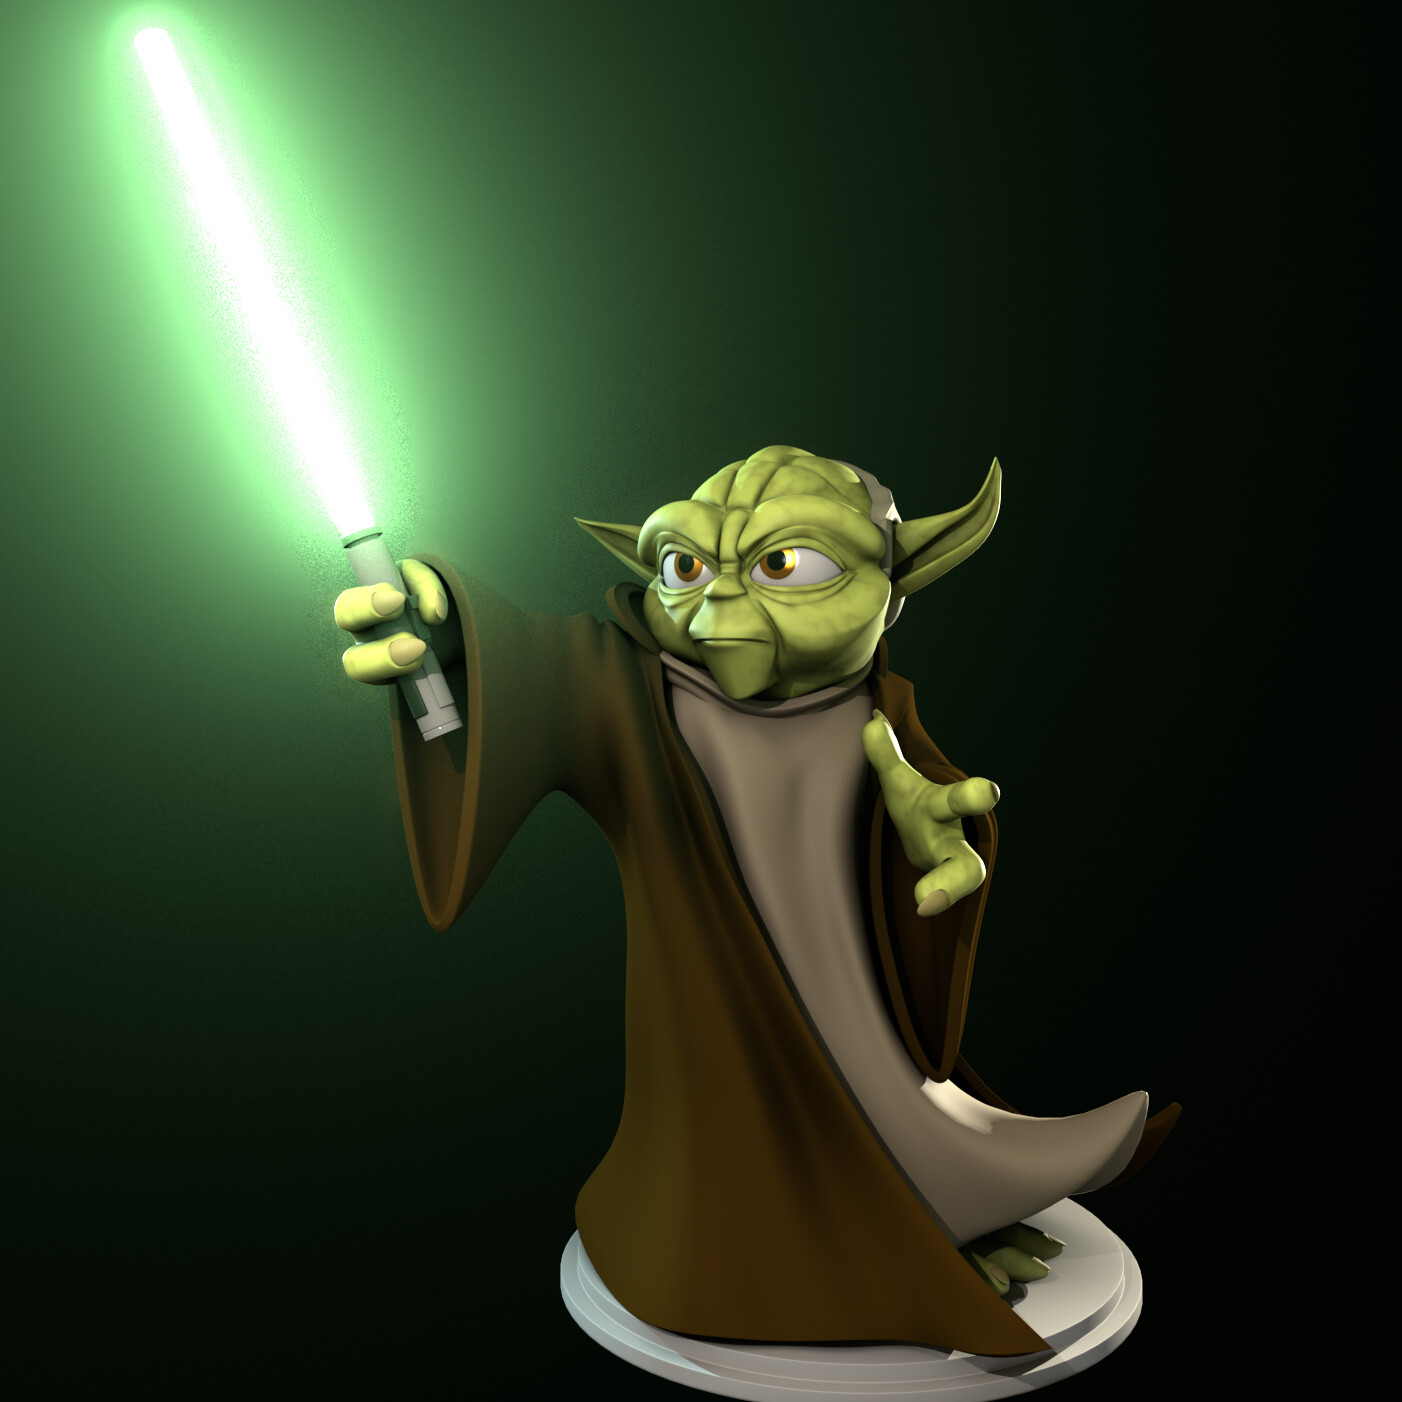 ArtStation - Cartoon Yoda Fan Art